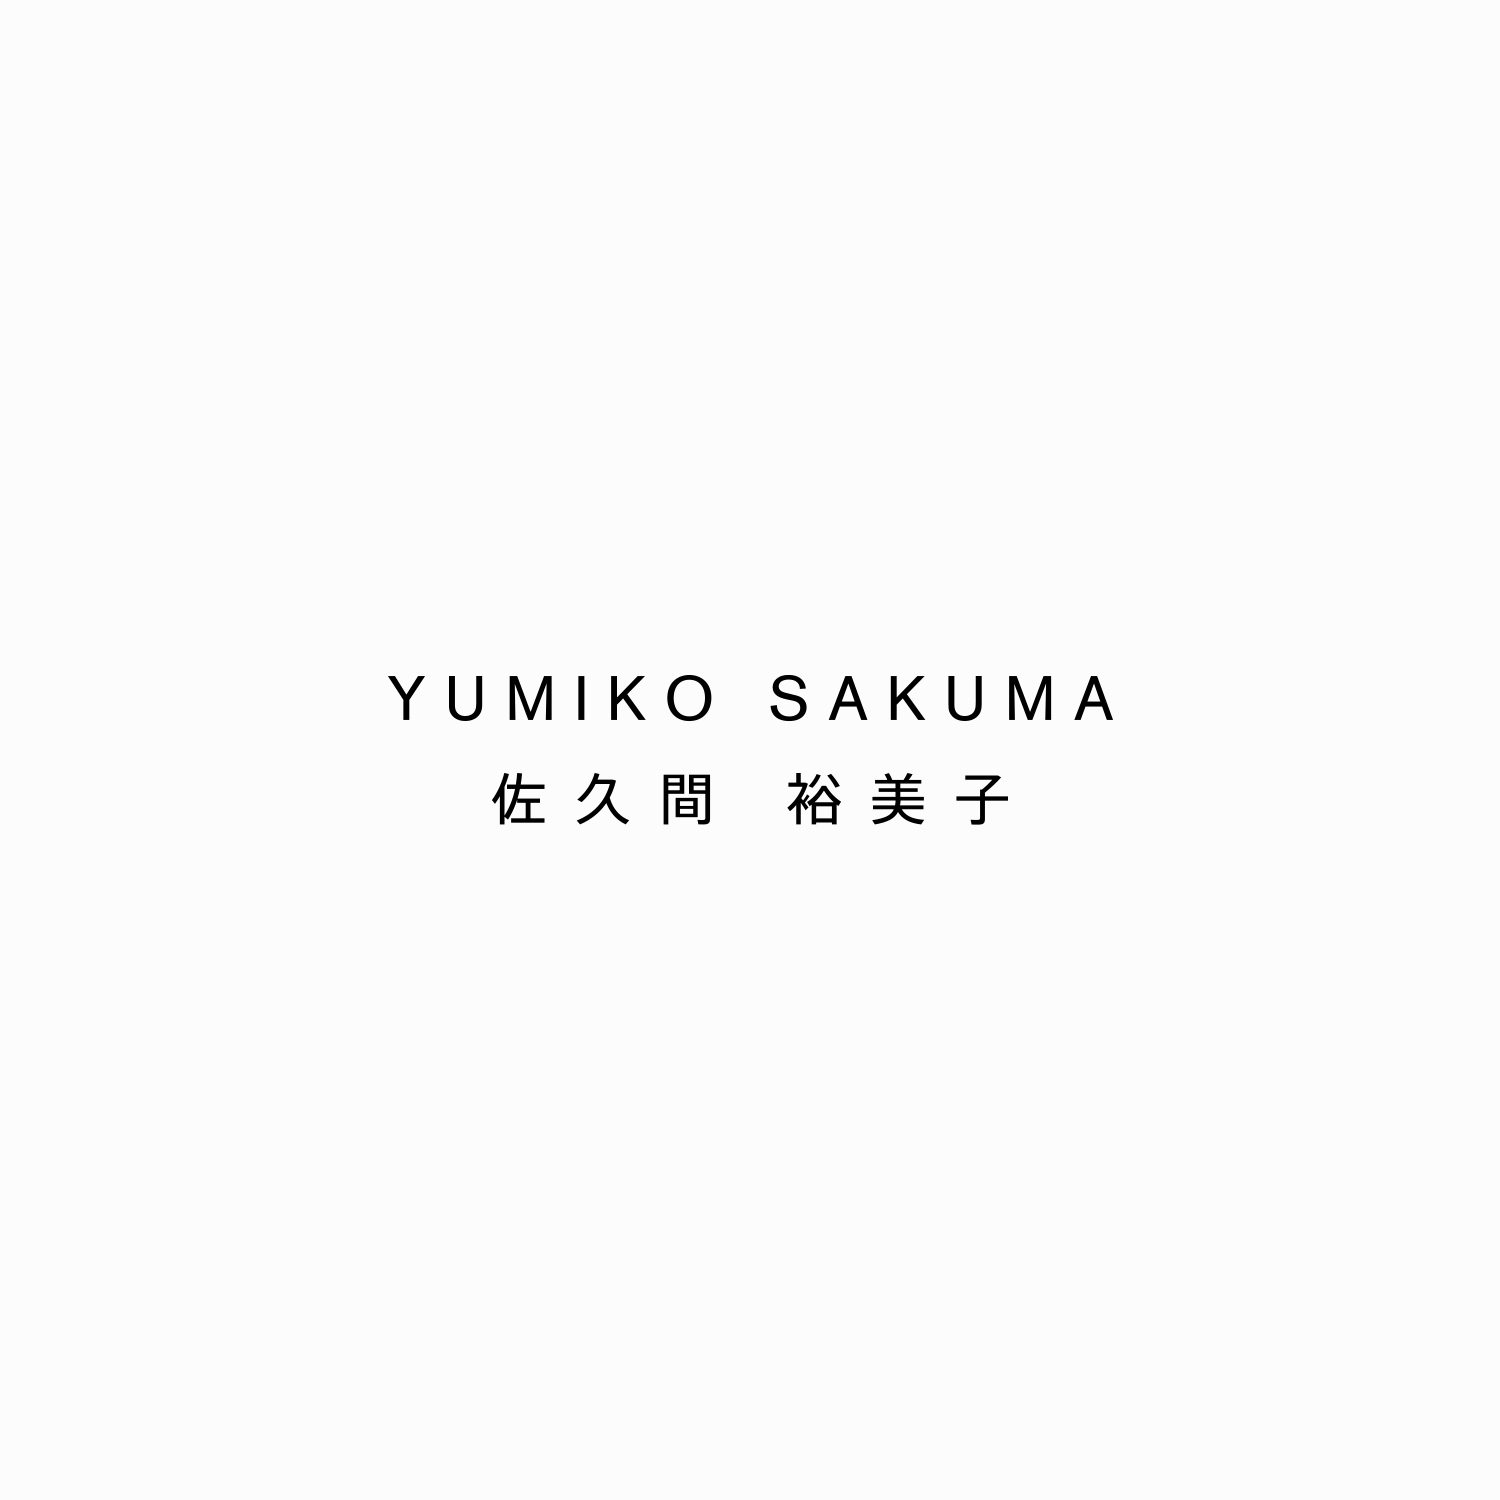 Yumiko Sakuma